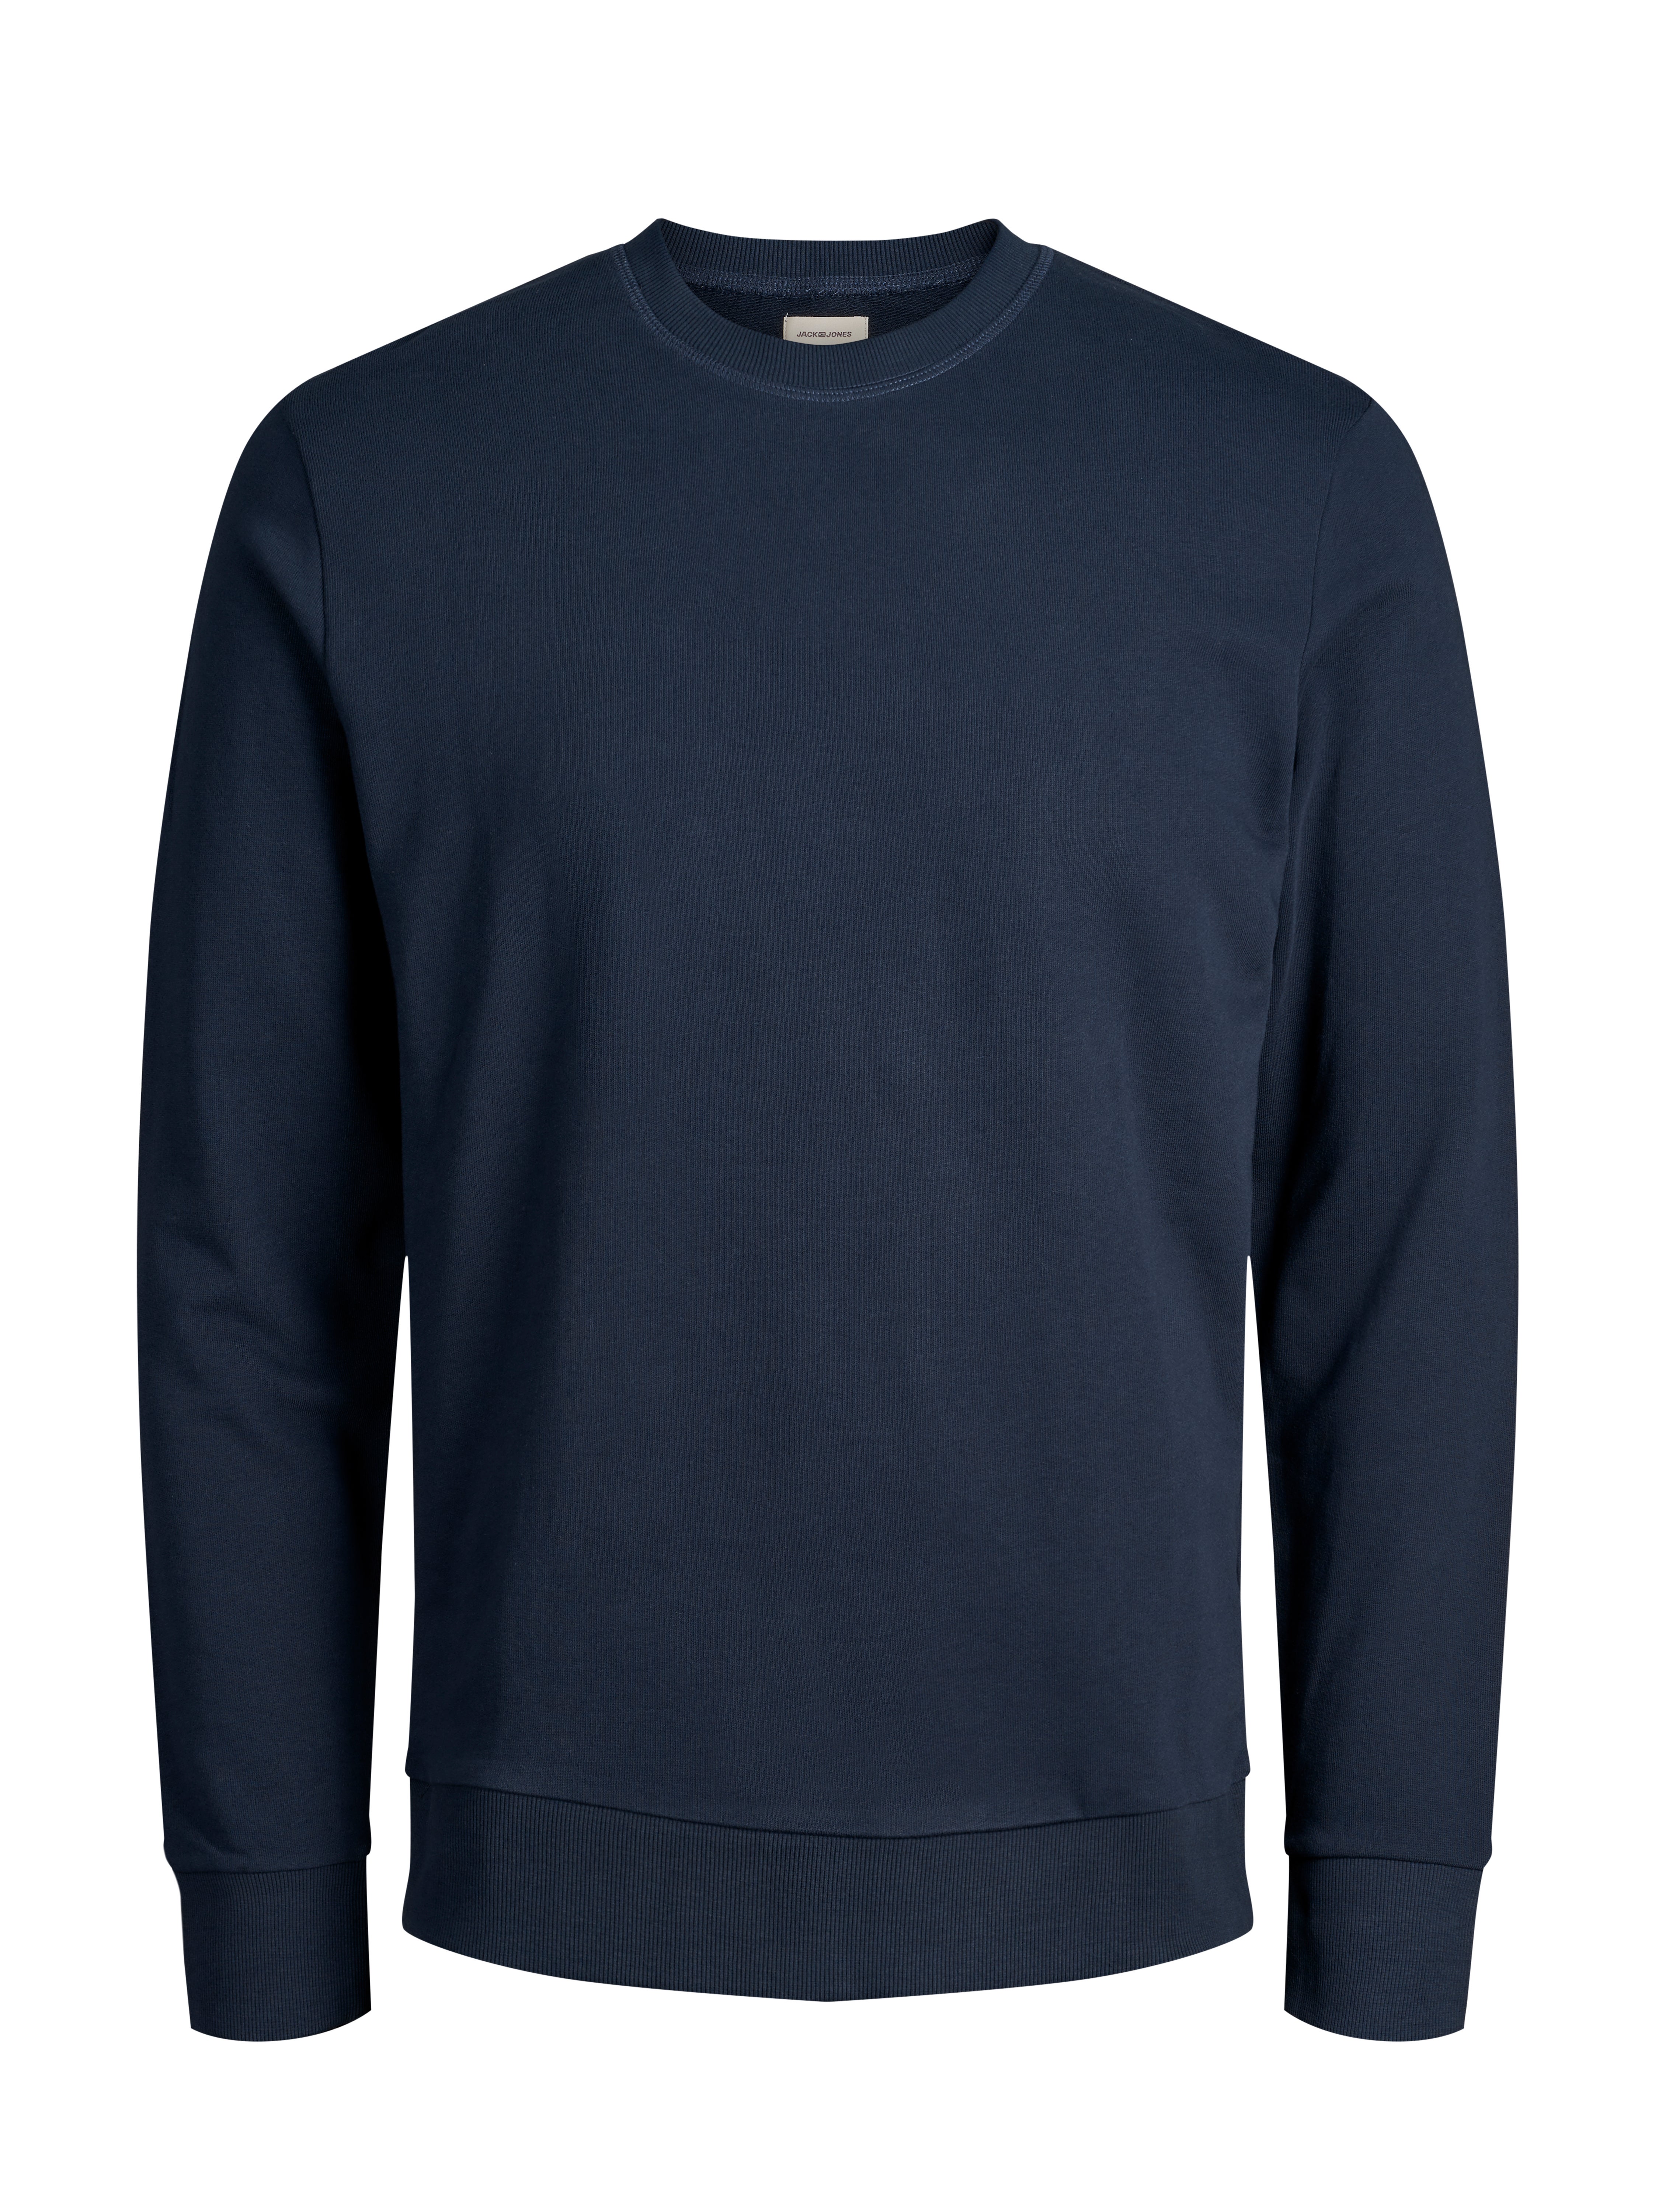 30% Rabatt auf Sweatshirt | Jack & Jones®